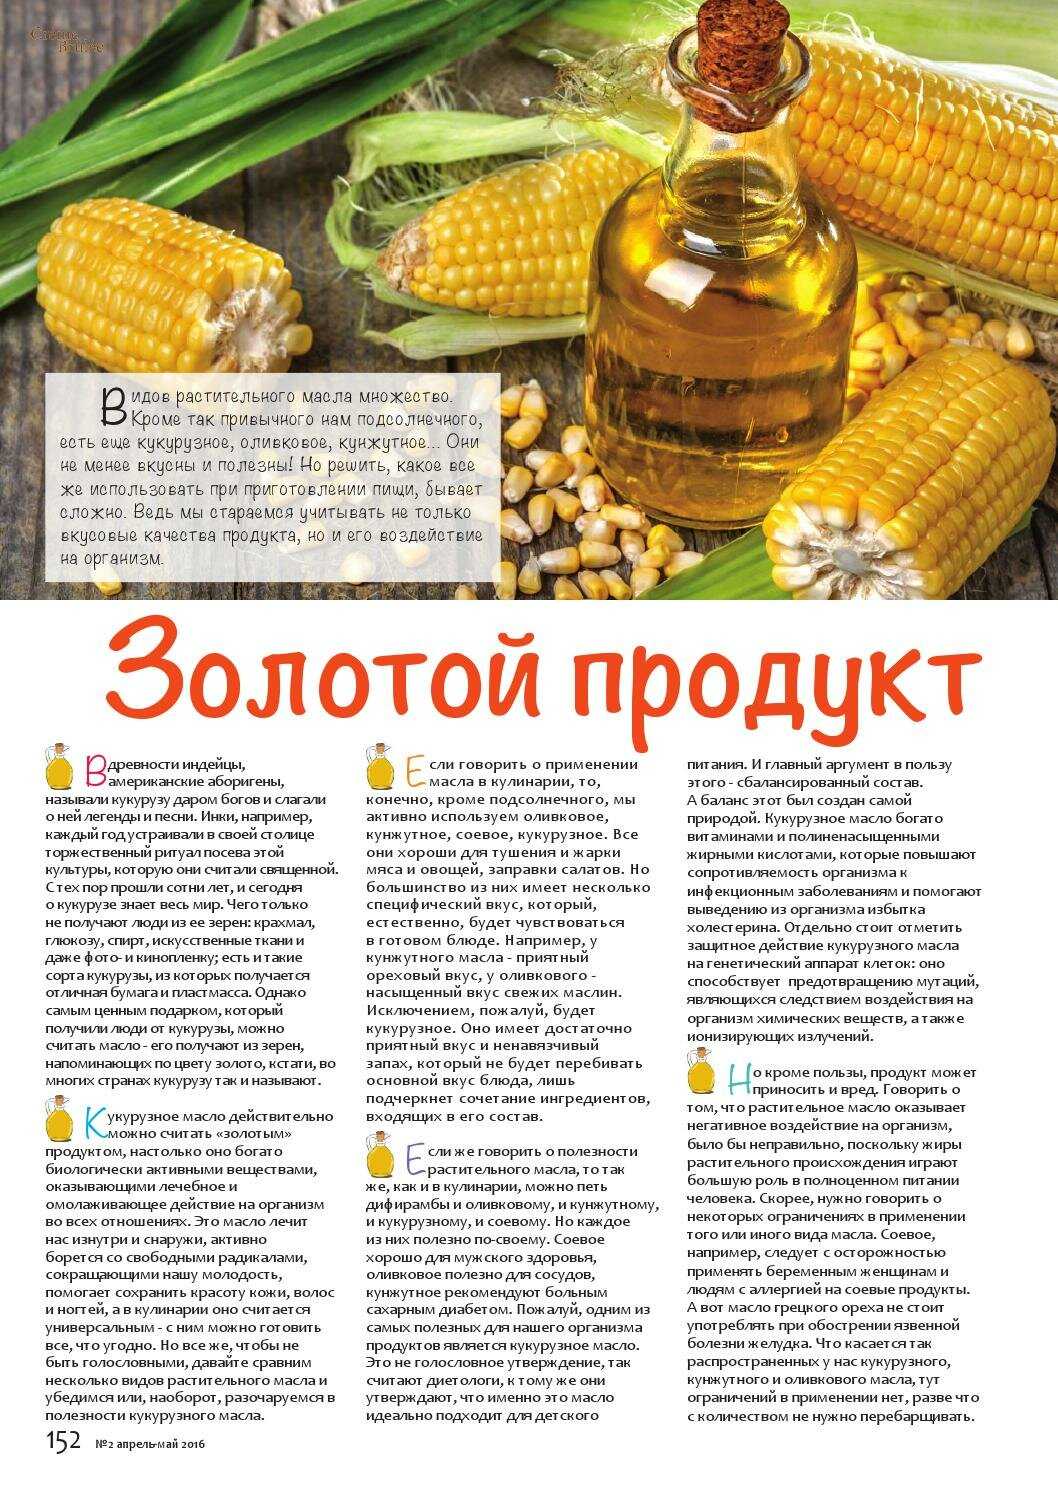 Кукурузное масло: польза и вред для здоровья человека